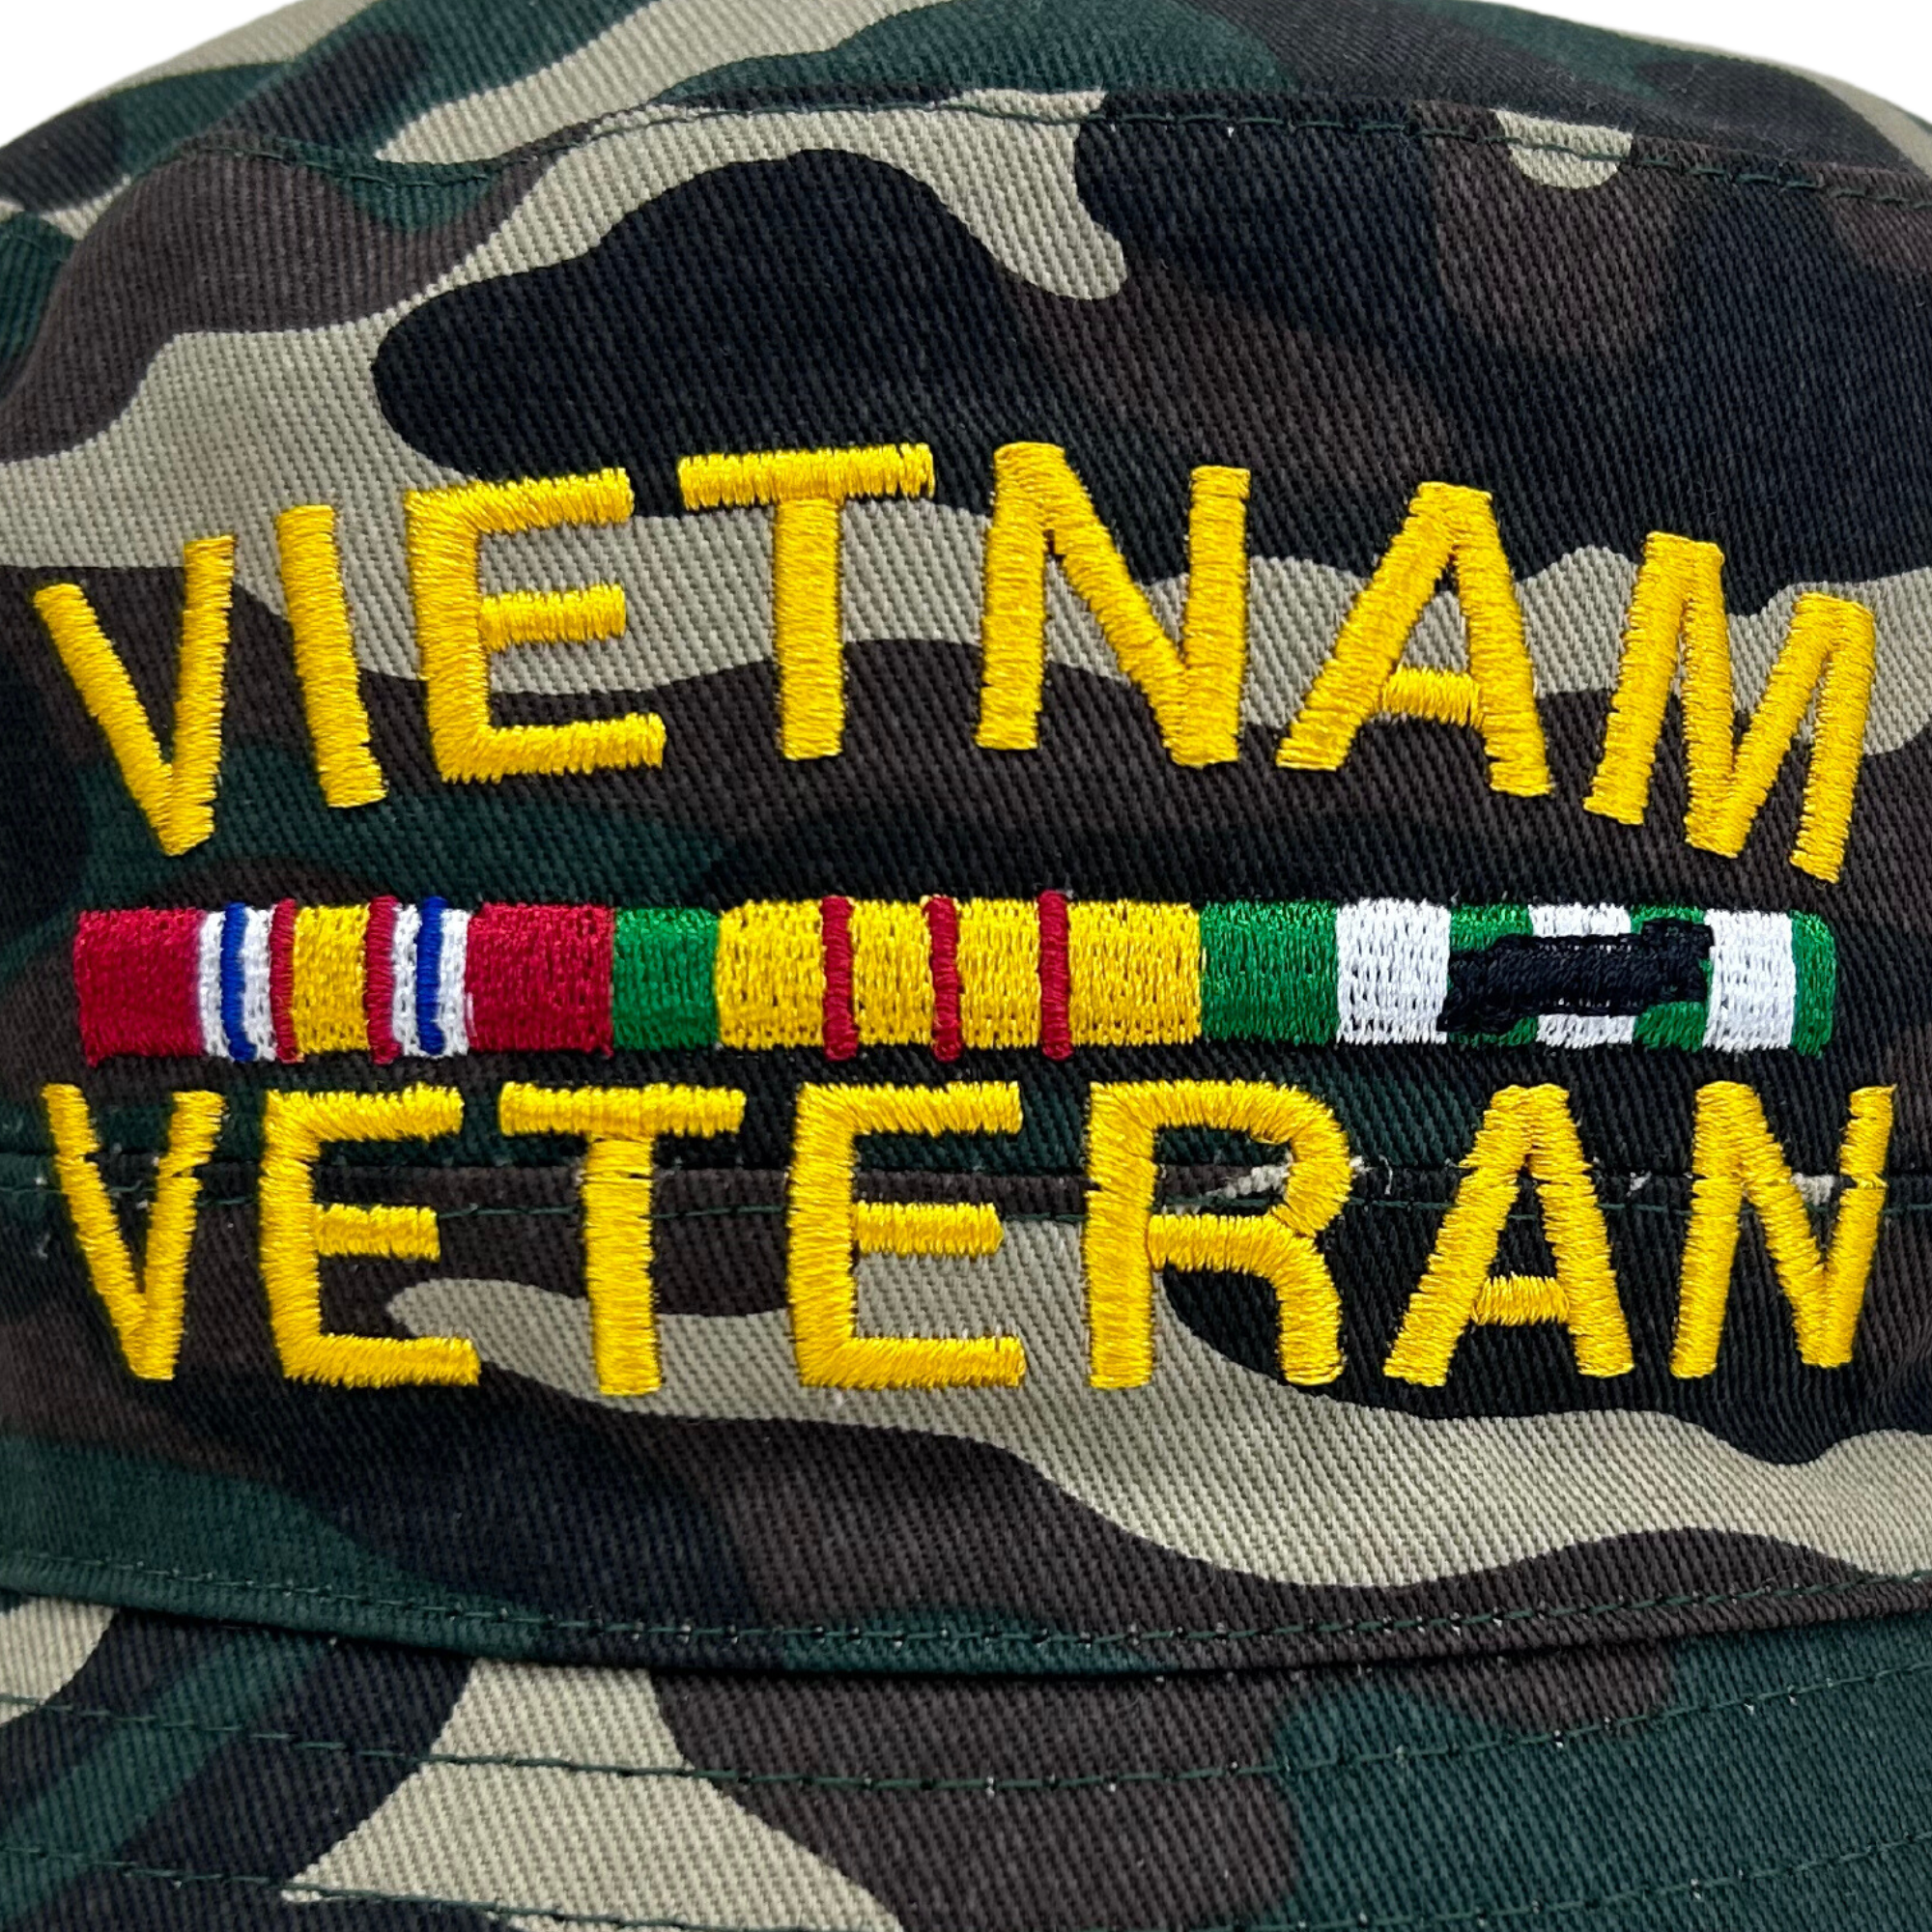 Vietnam Veteran Bucket Hat